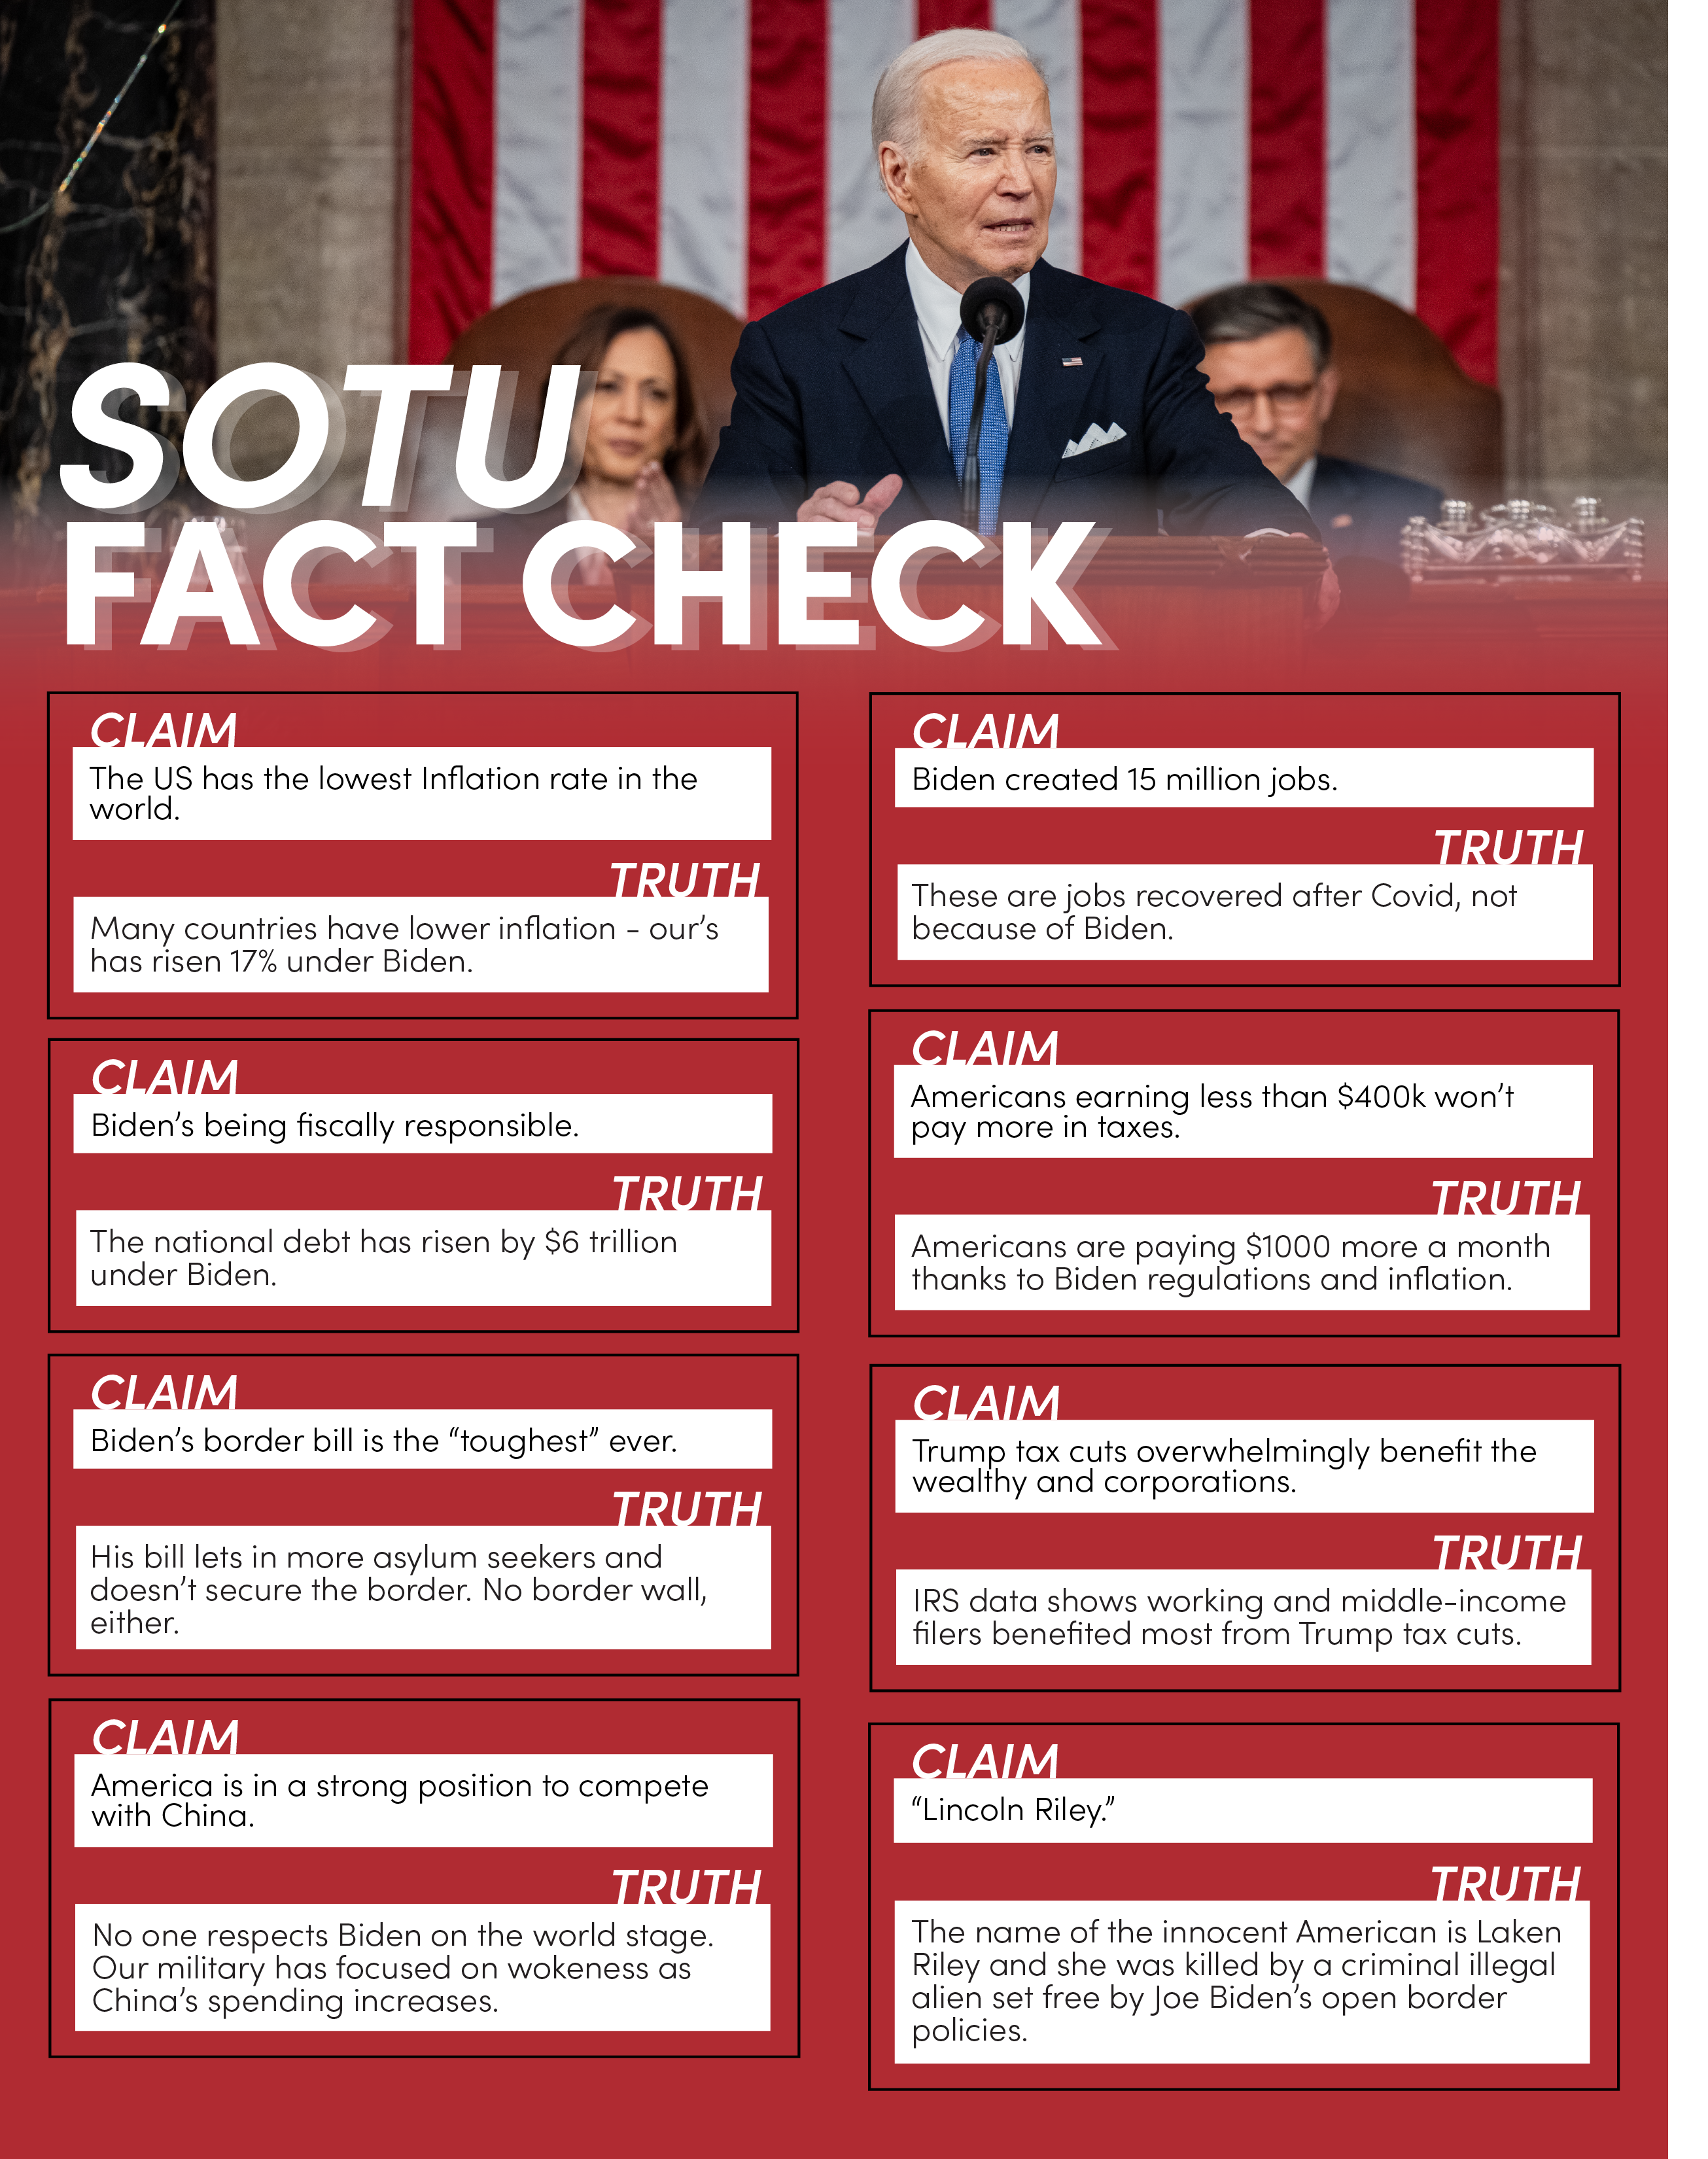 SOTU fact check